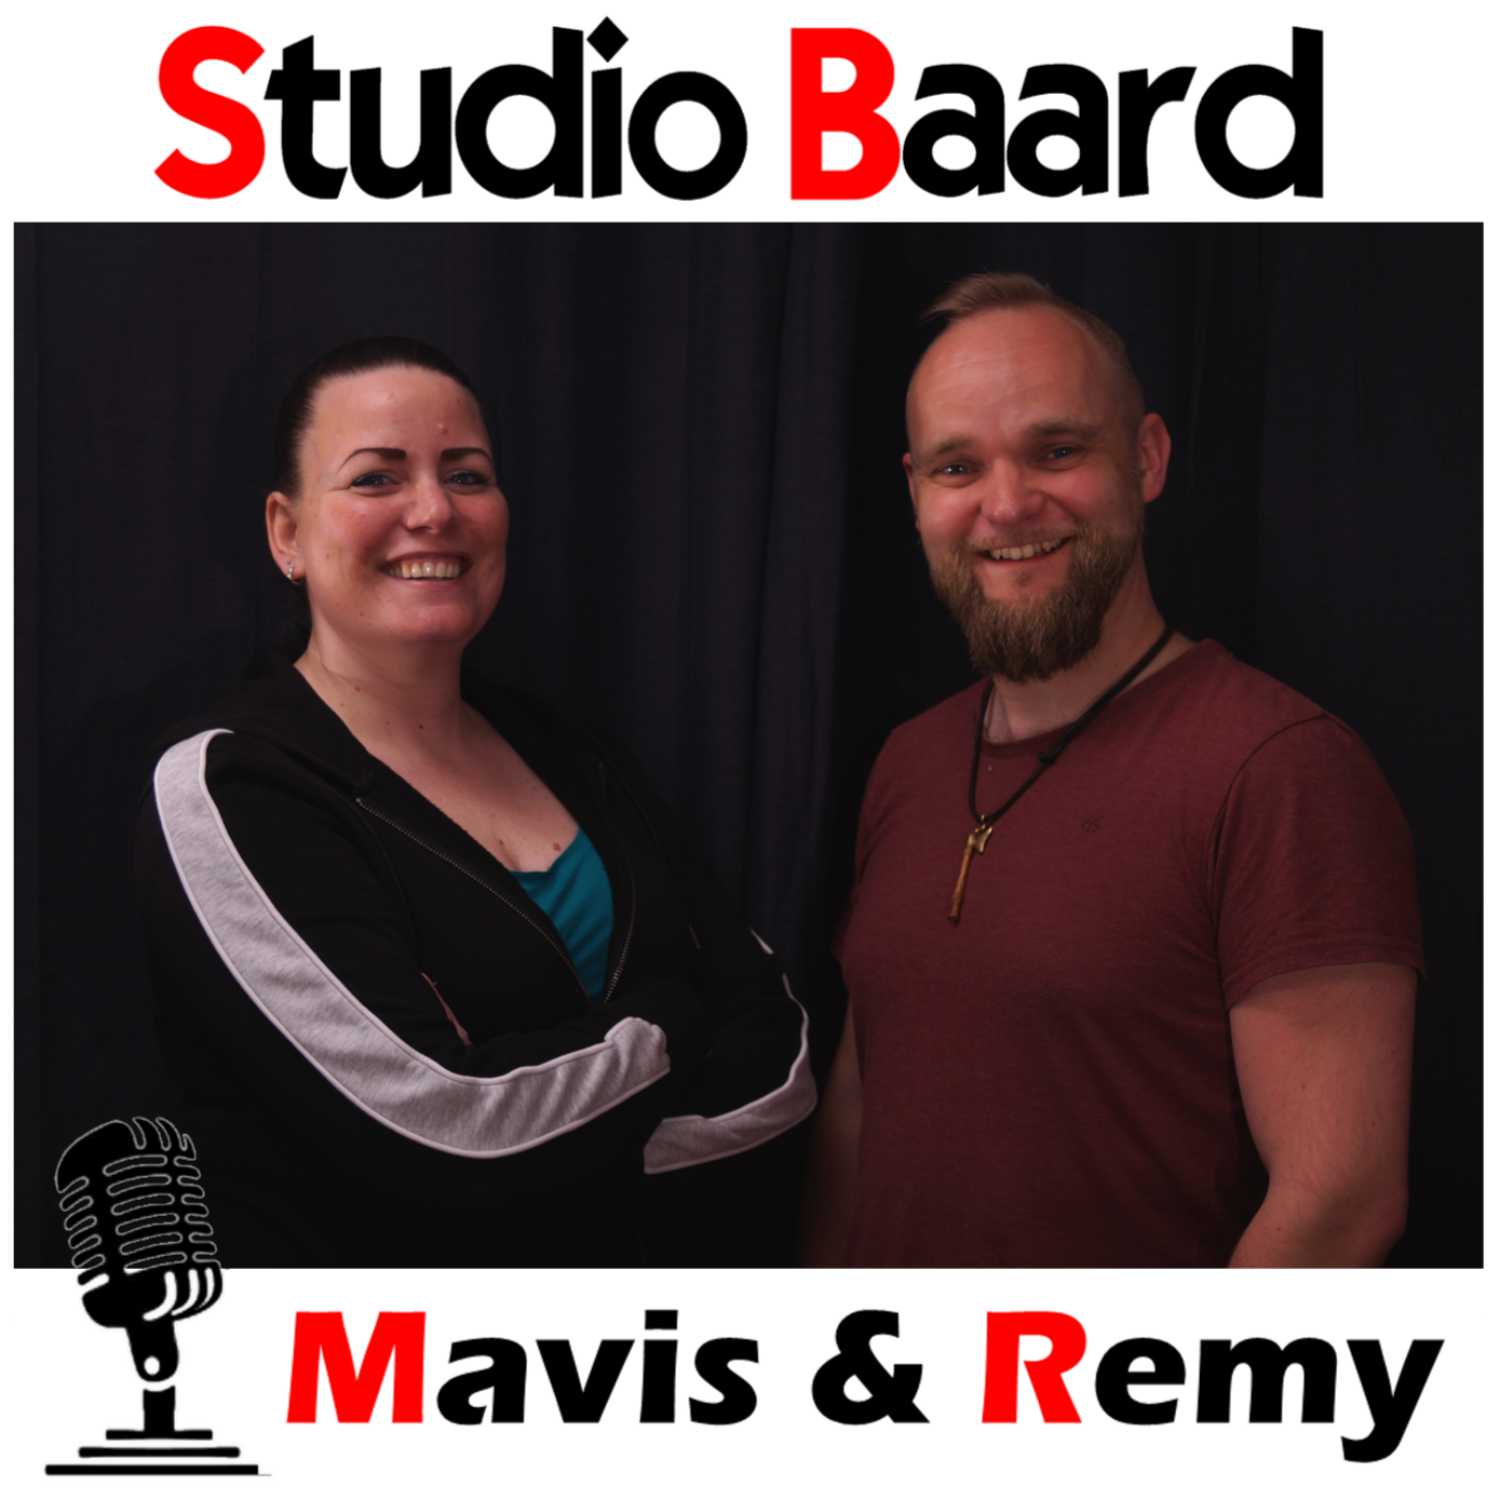 Studio Baard met Mavis en Remy (deel 2)